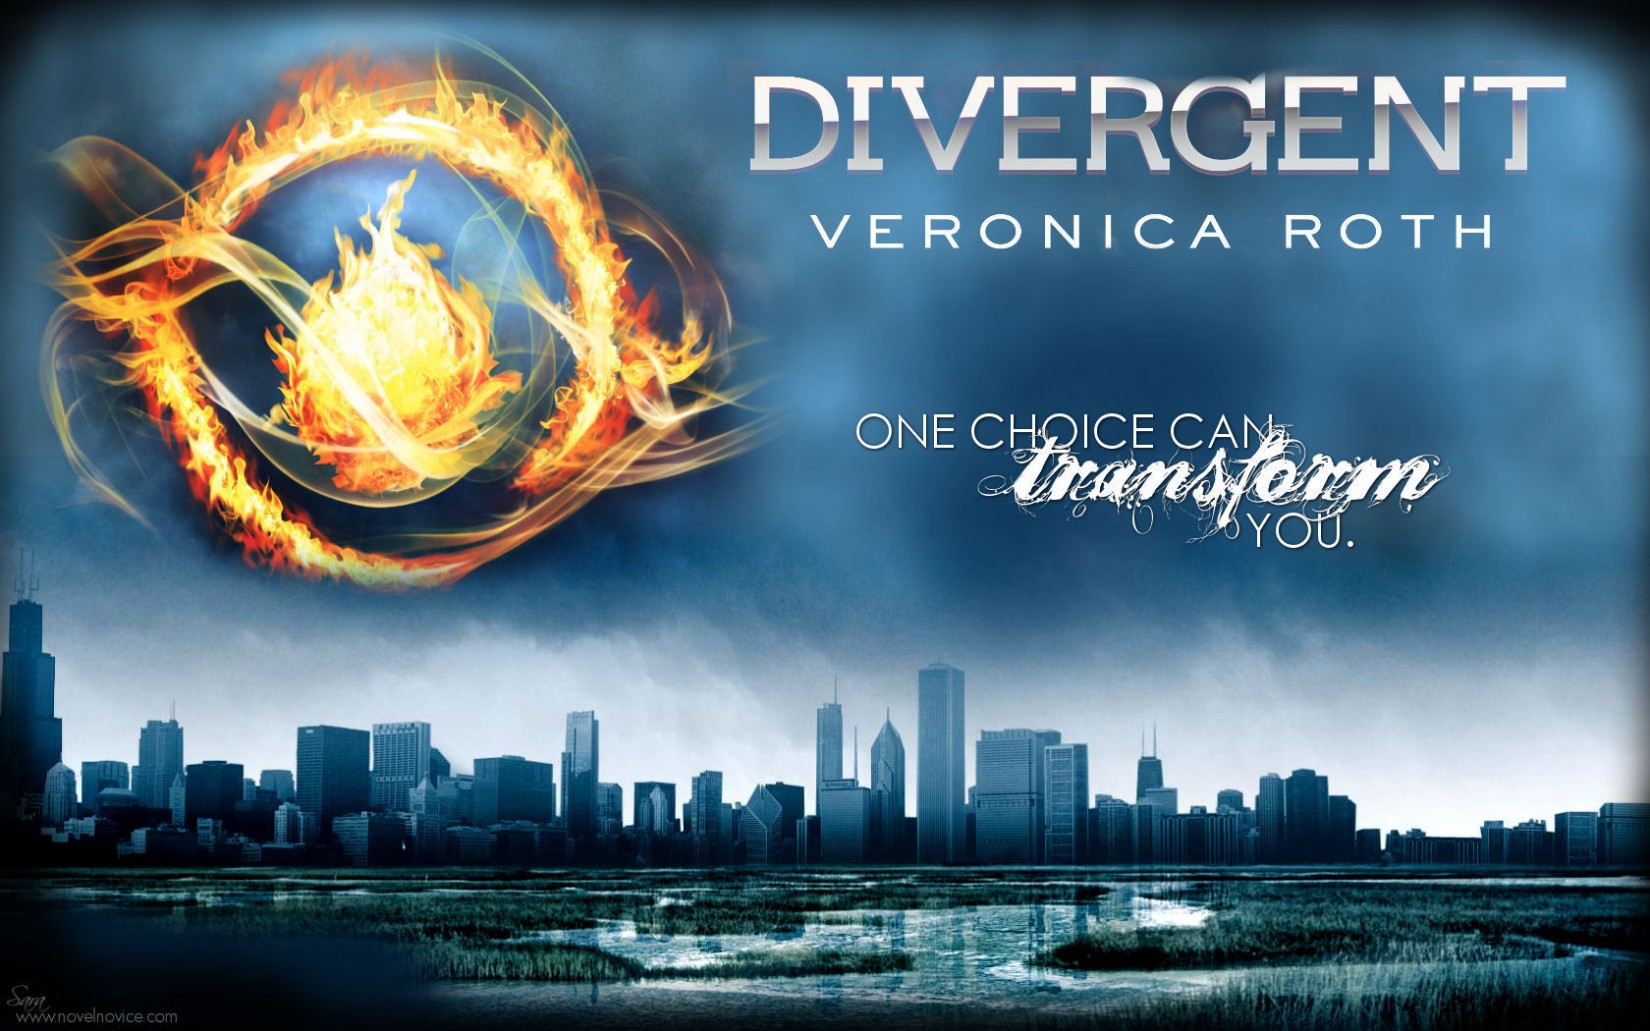 Pourriez-vous me donner le nom de la police du roman Divergent de Veronica Roth?